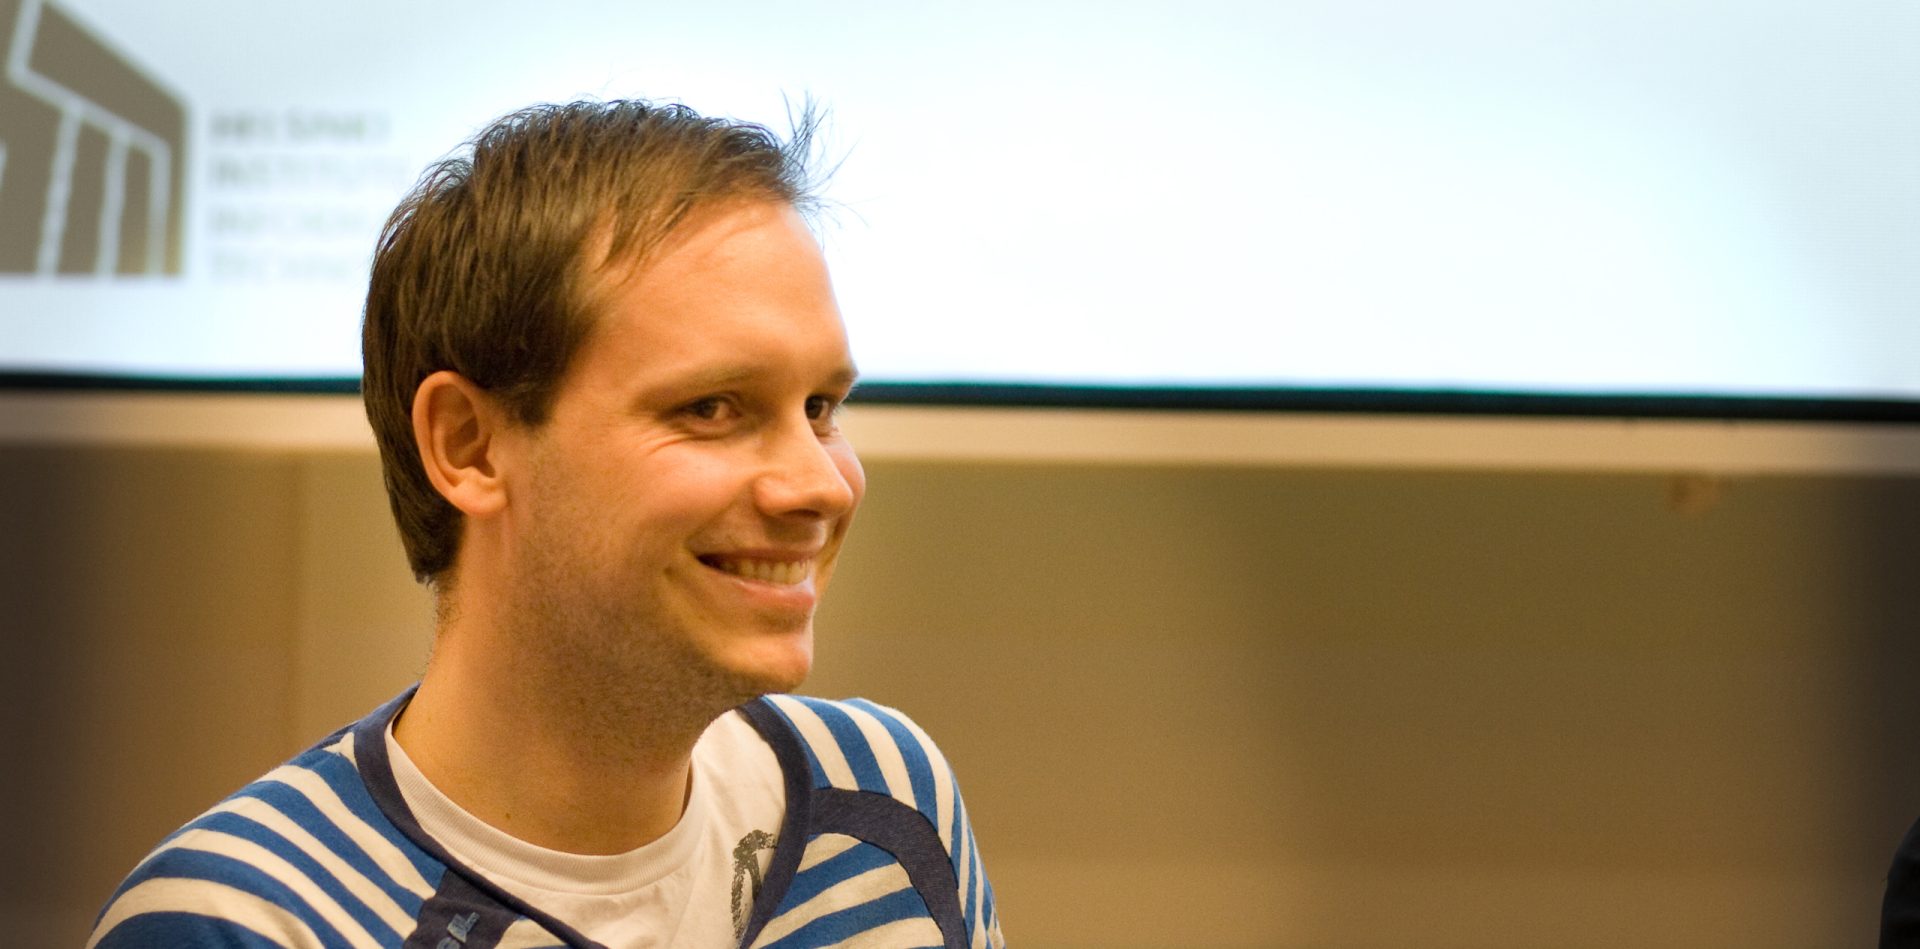 Co-fundador do Pirate Bay preso depois de dois anos em fuga